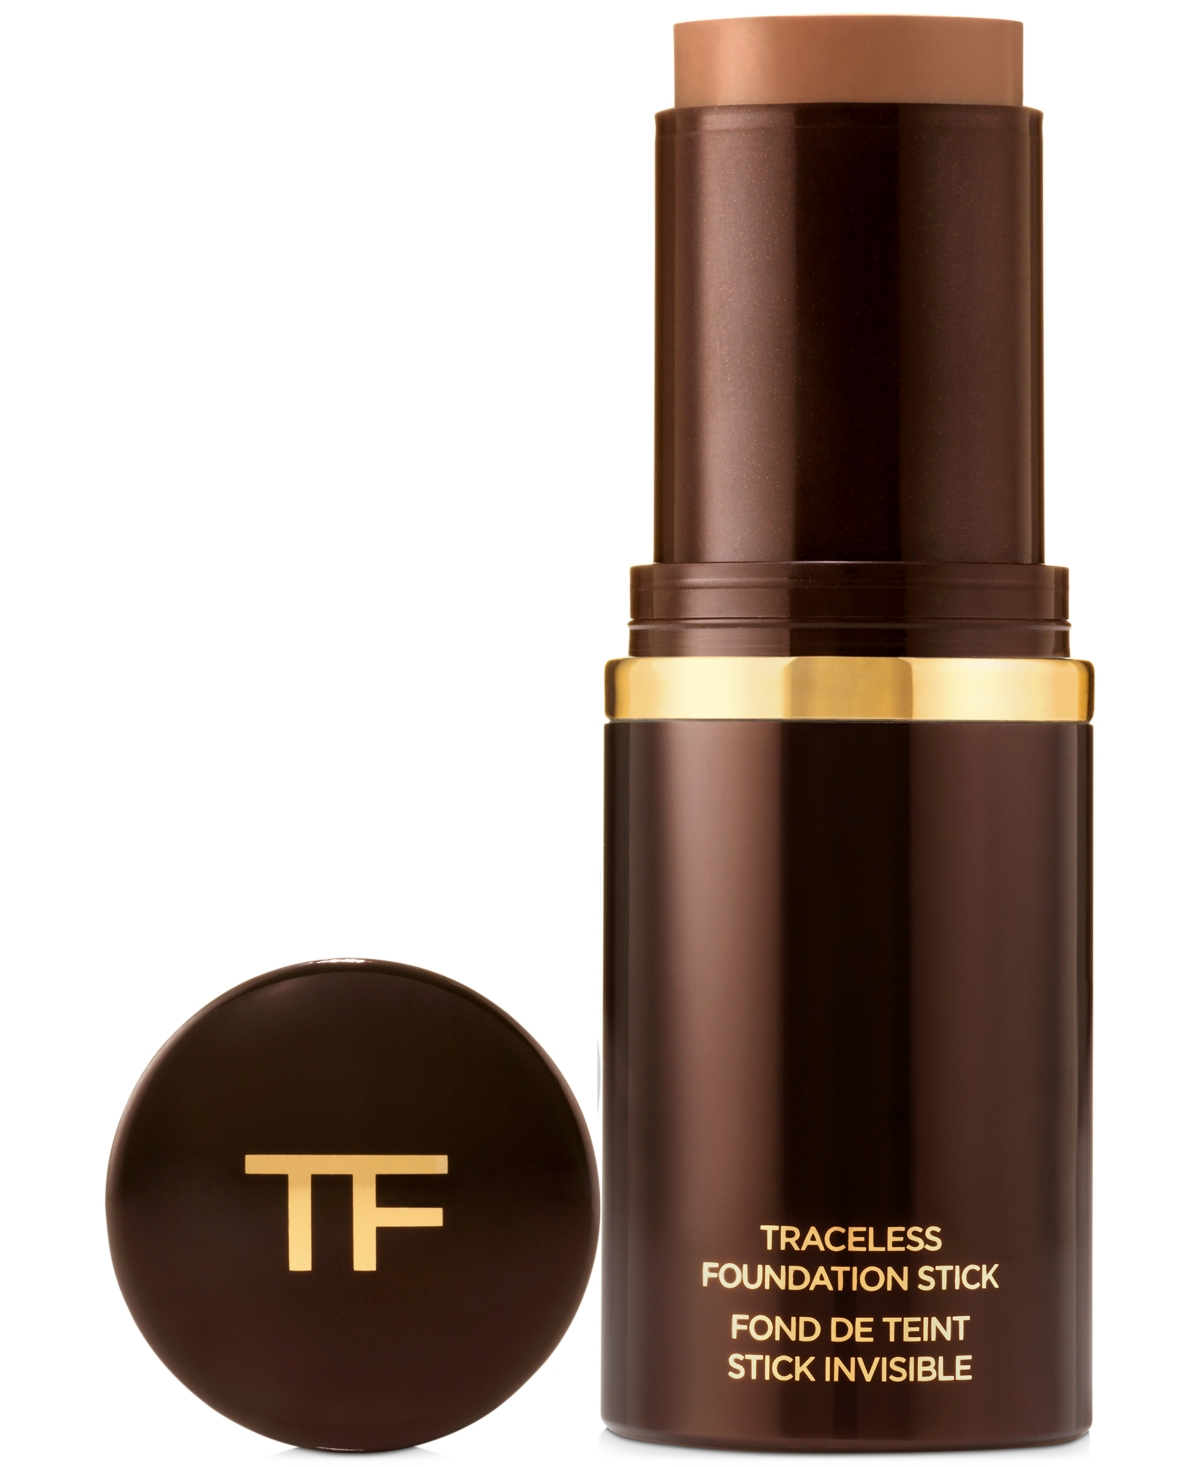 Tom Ford Traceless Foundation Stick In . Warm Almond-dark,warm Golden Underton